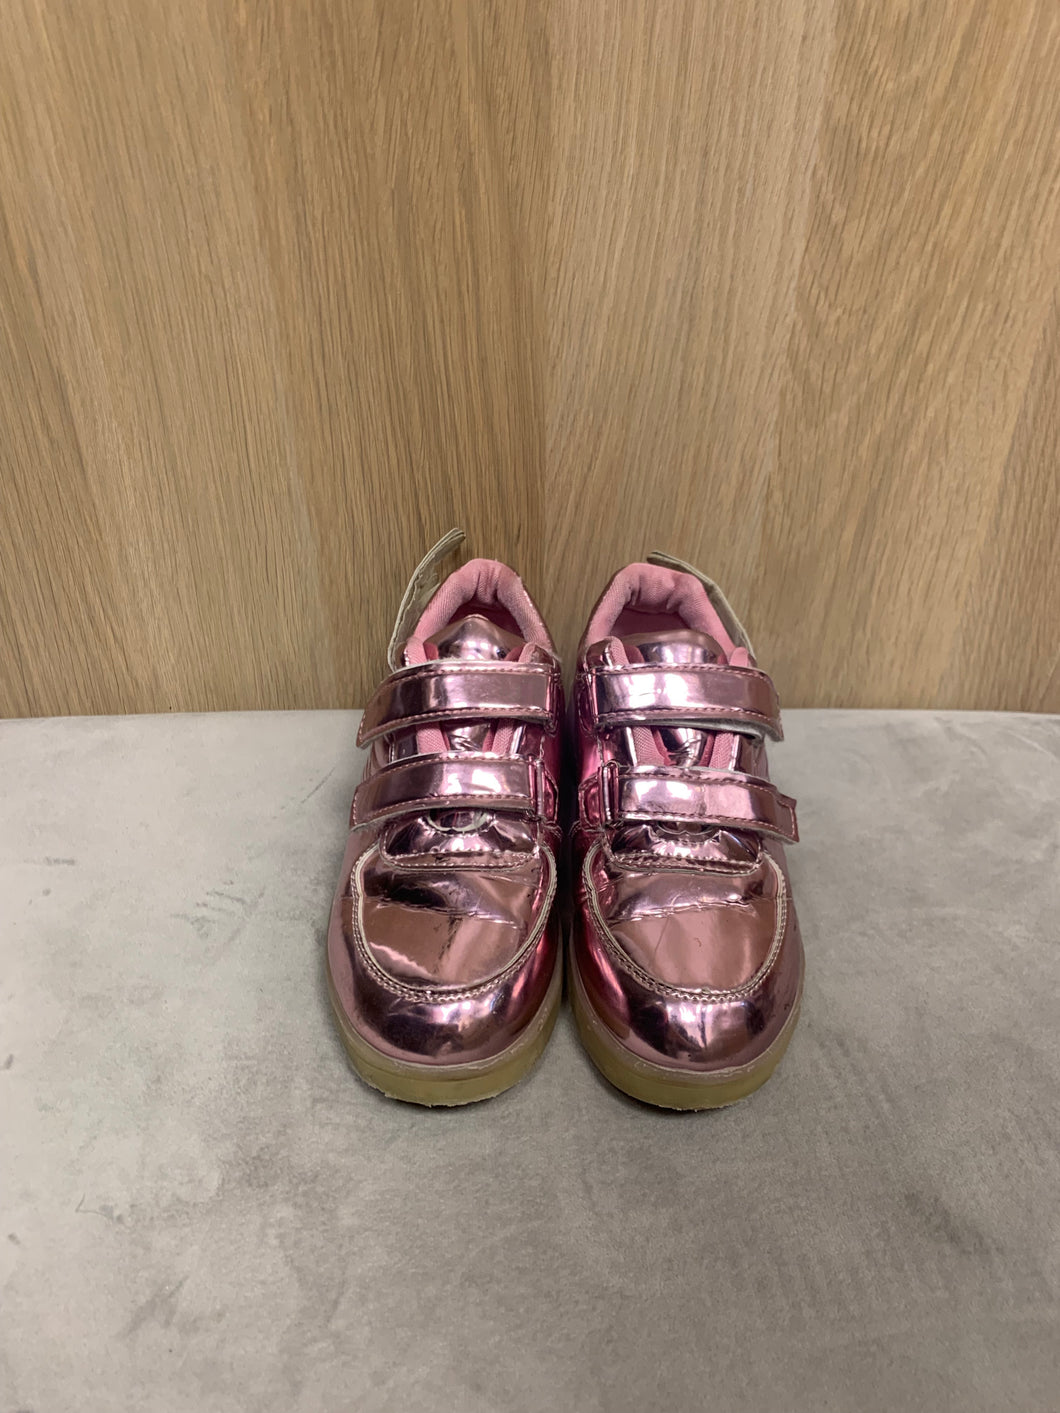 Barn skor lysande rosa med laddare storlek 32